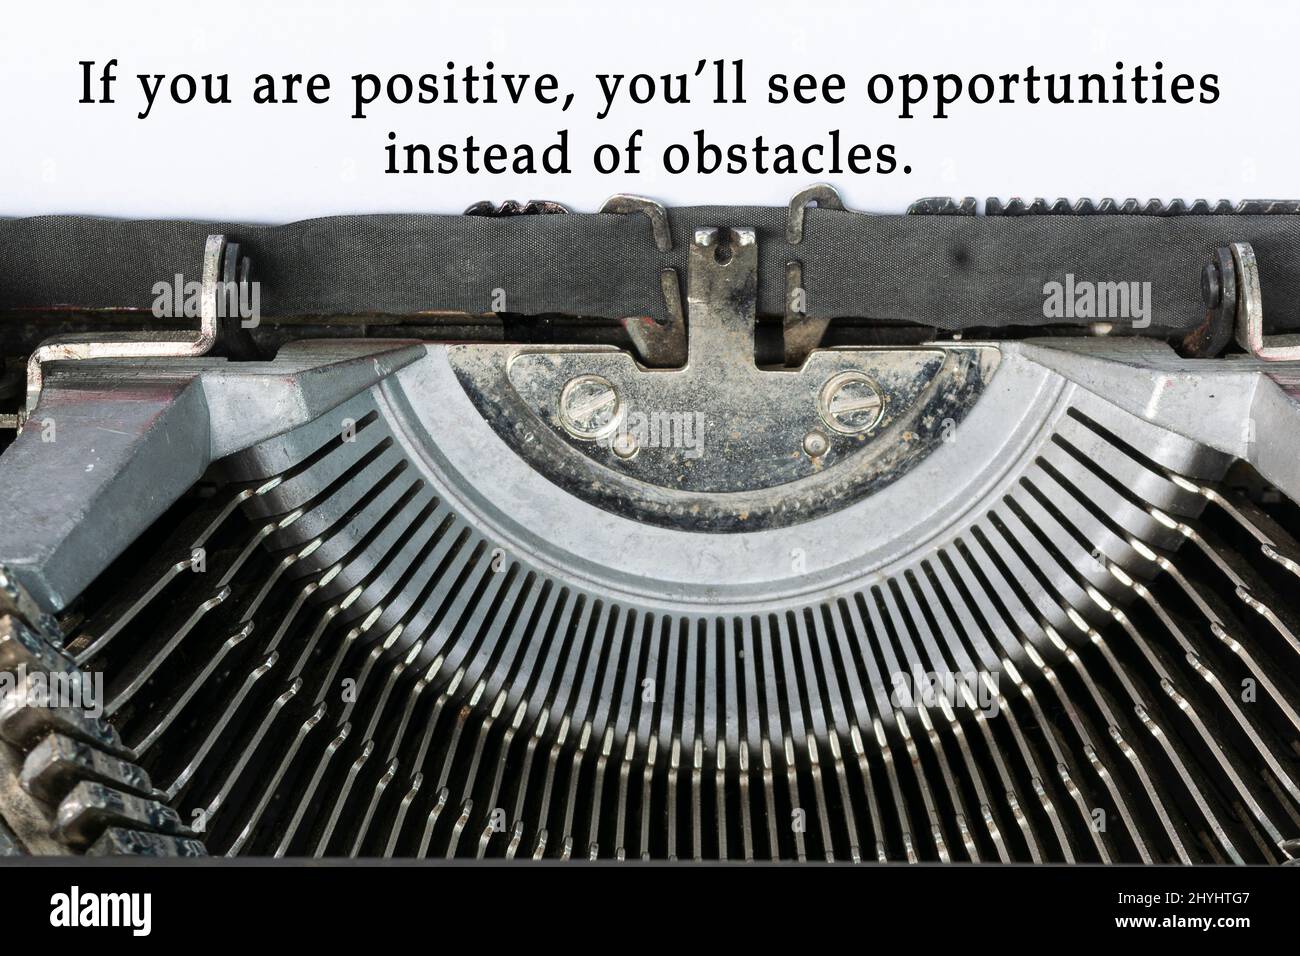 Motivationszitat auf einer alten klassischen Schreibmaschine geschrieben - Wenn Sie positiv sind, werden Sie Chancen statt Hindernisse sehen. Stockfoto